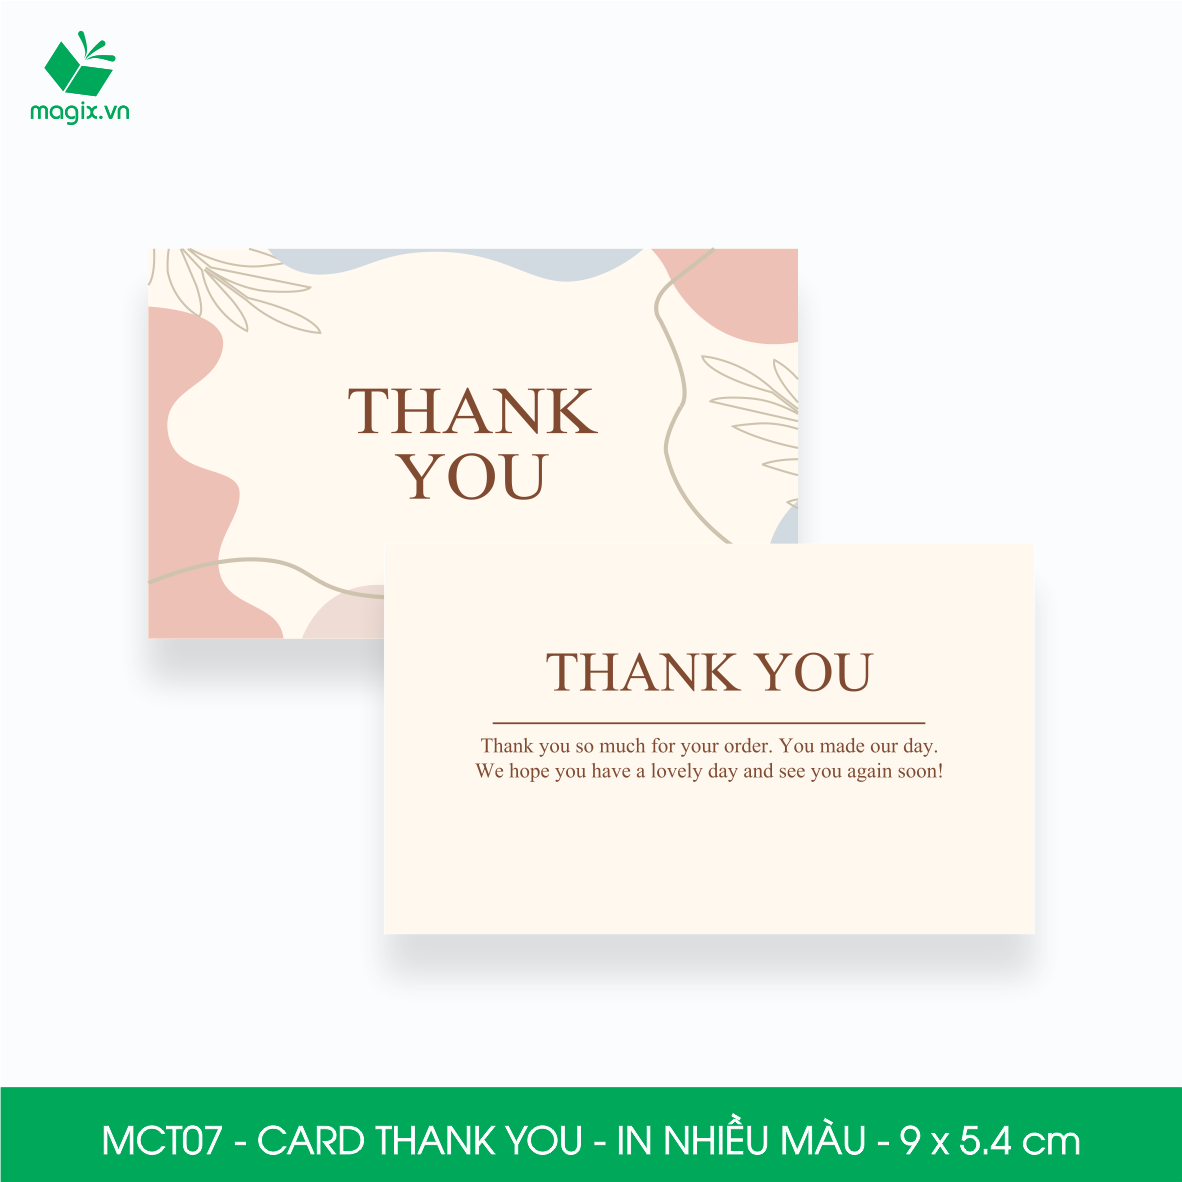 MCT07 - 9x5.4 cm - 1000 Card Thank you, Thiệp cảm ơn khách hàng, card cám ơn cứng cáp sang trọng